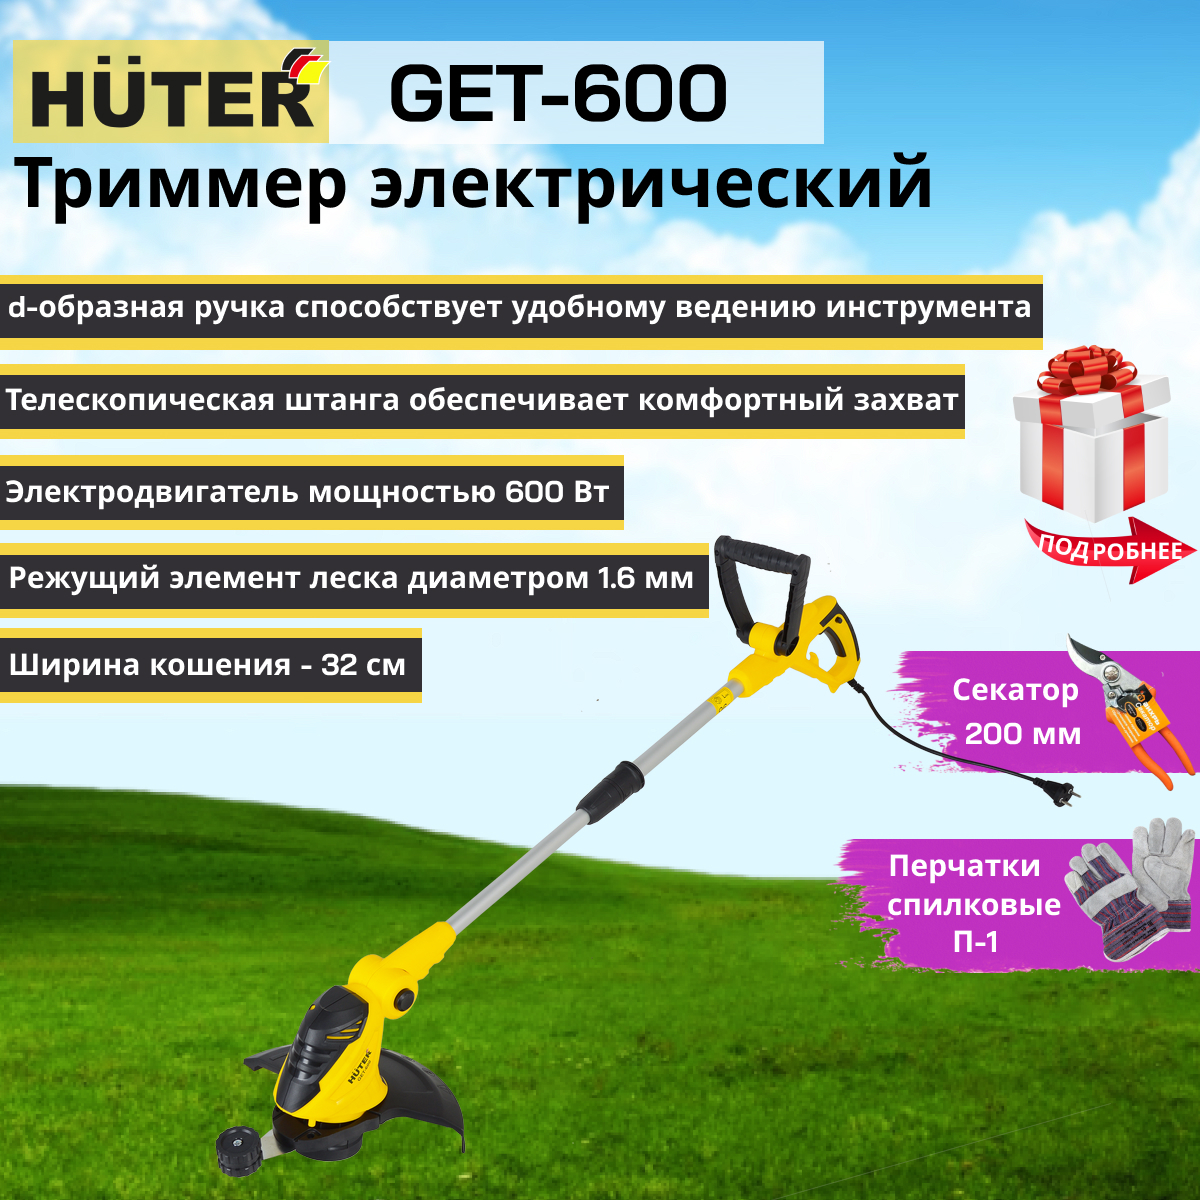 Триммер электрический отзывы какой. Электрический триммер get-600 Huter 70/1/5. Электрический триммер Huter гет600. Электричесский триммер "Huter" get-600 (70/1/5). Триммер электрический Huter get-600.